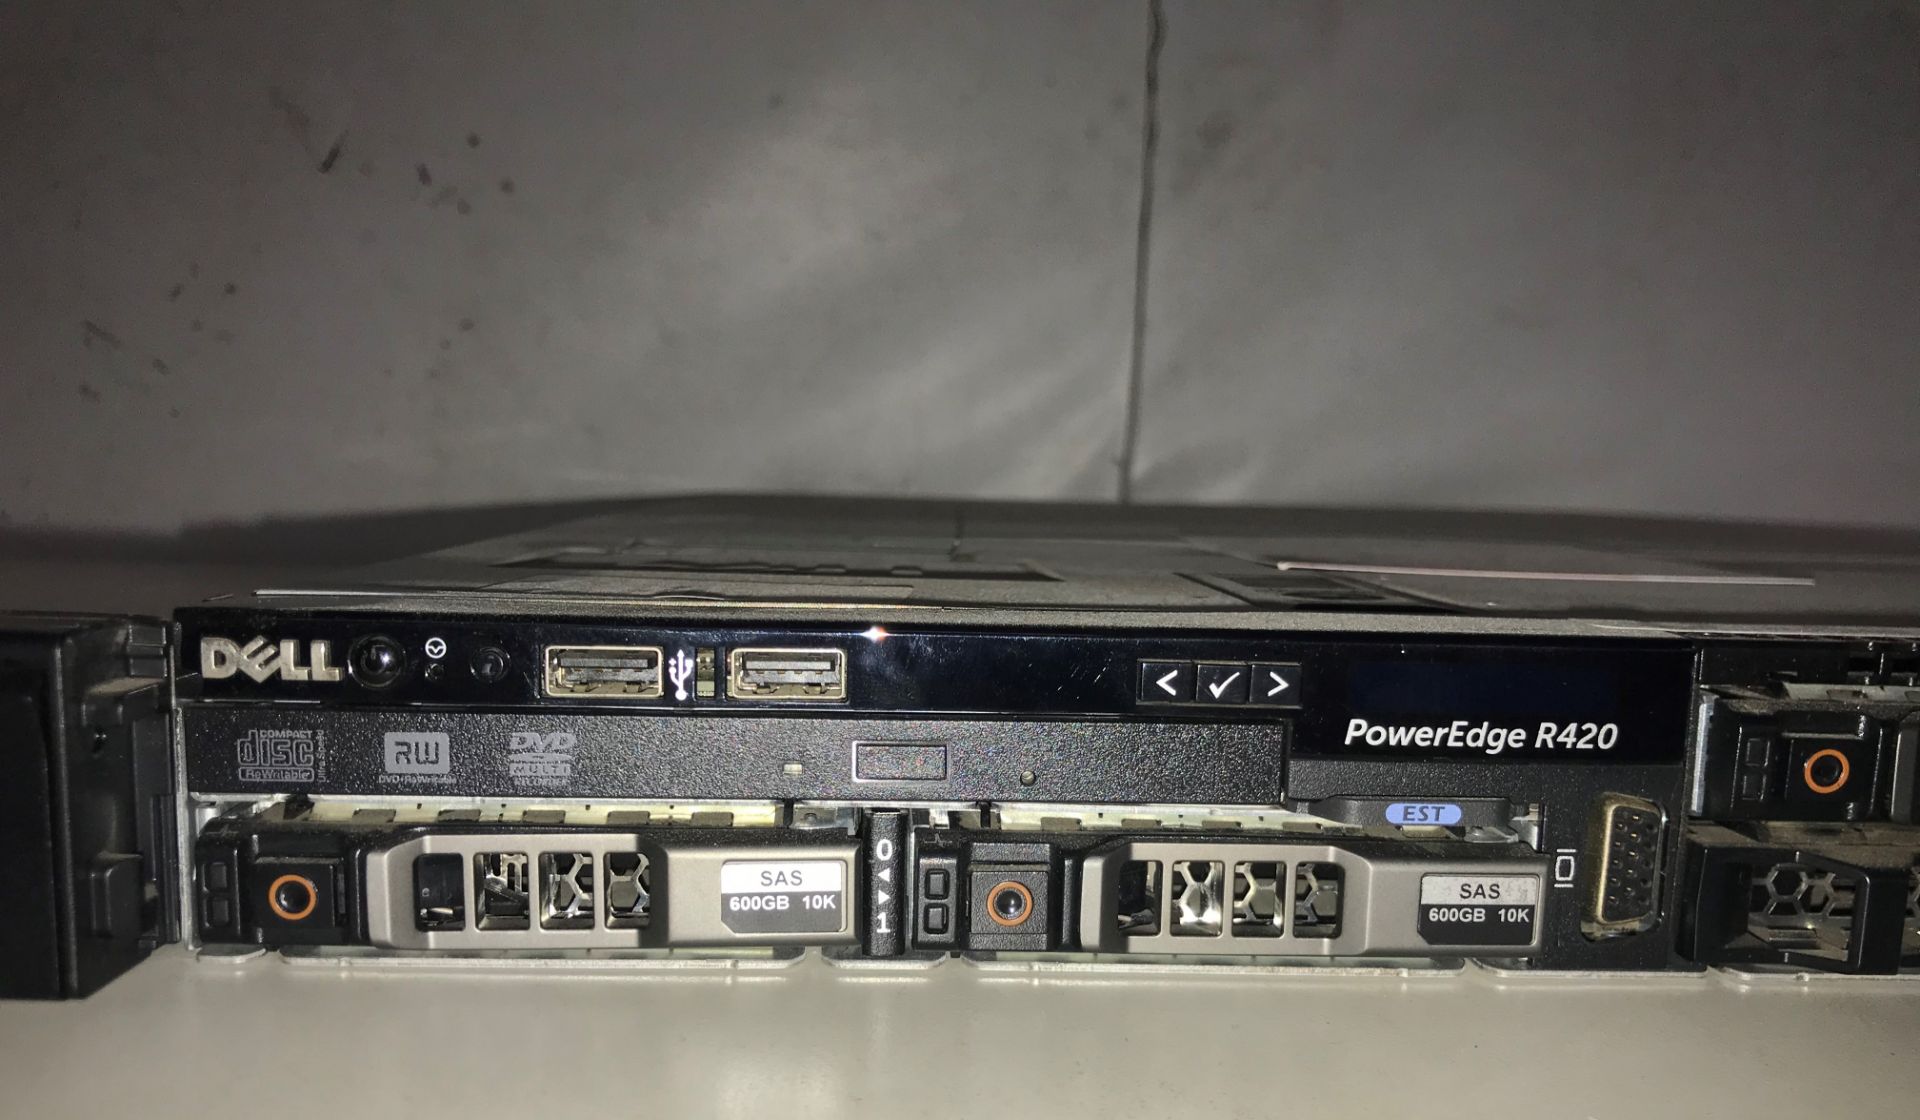 Dell Poweredge R420 Server Rack - Image 3 of 5